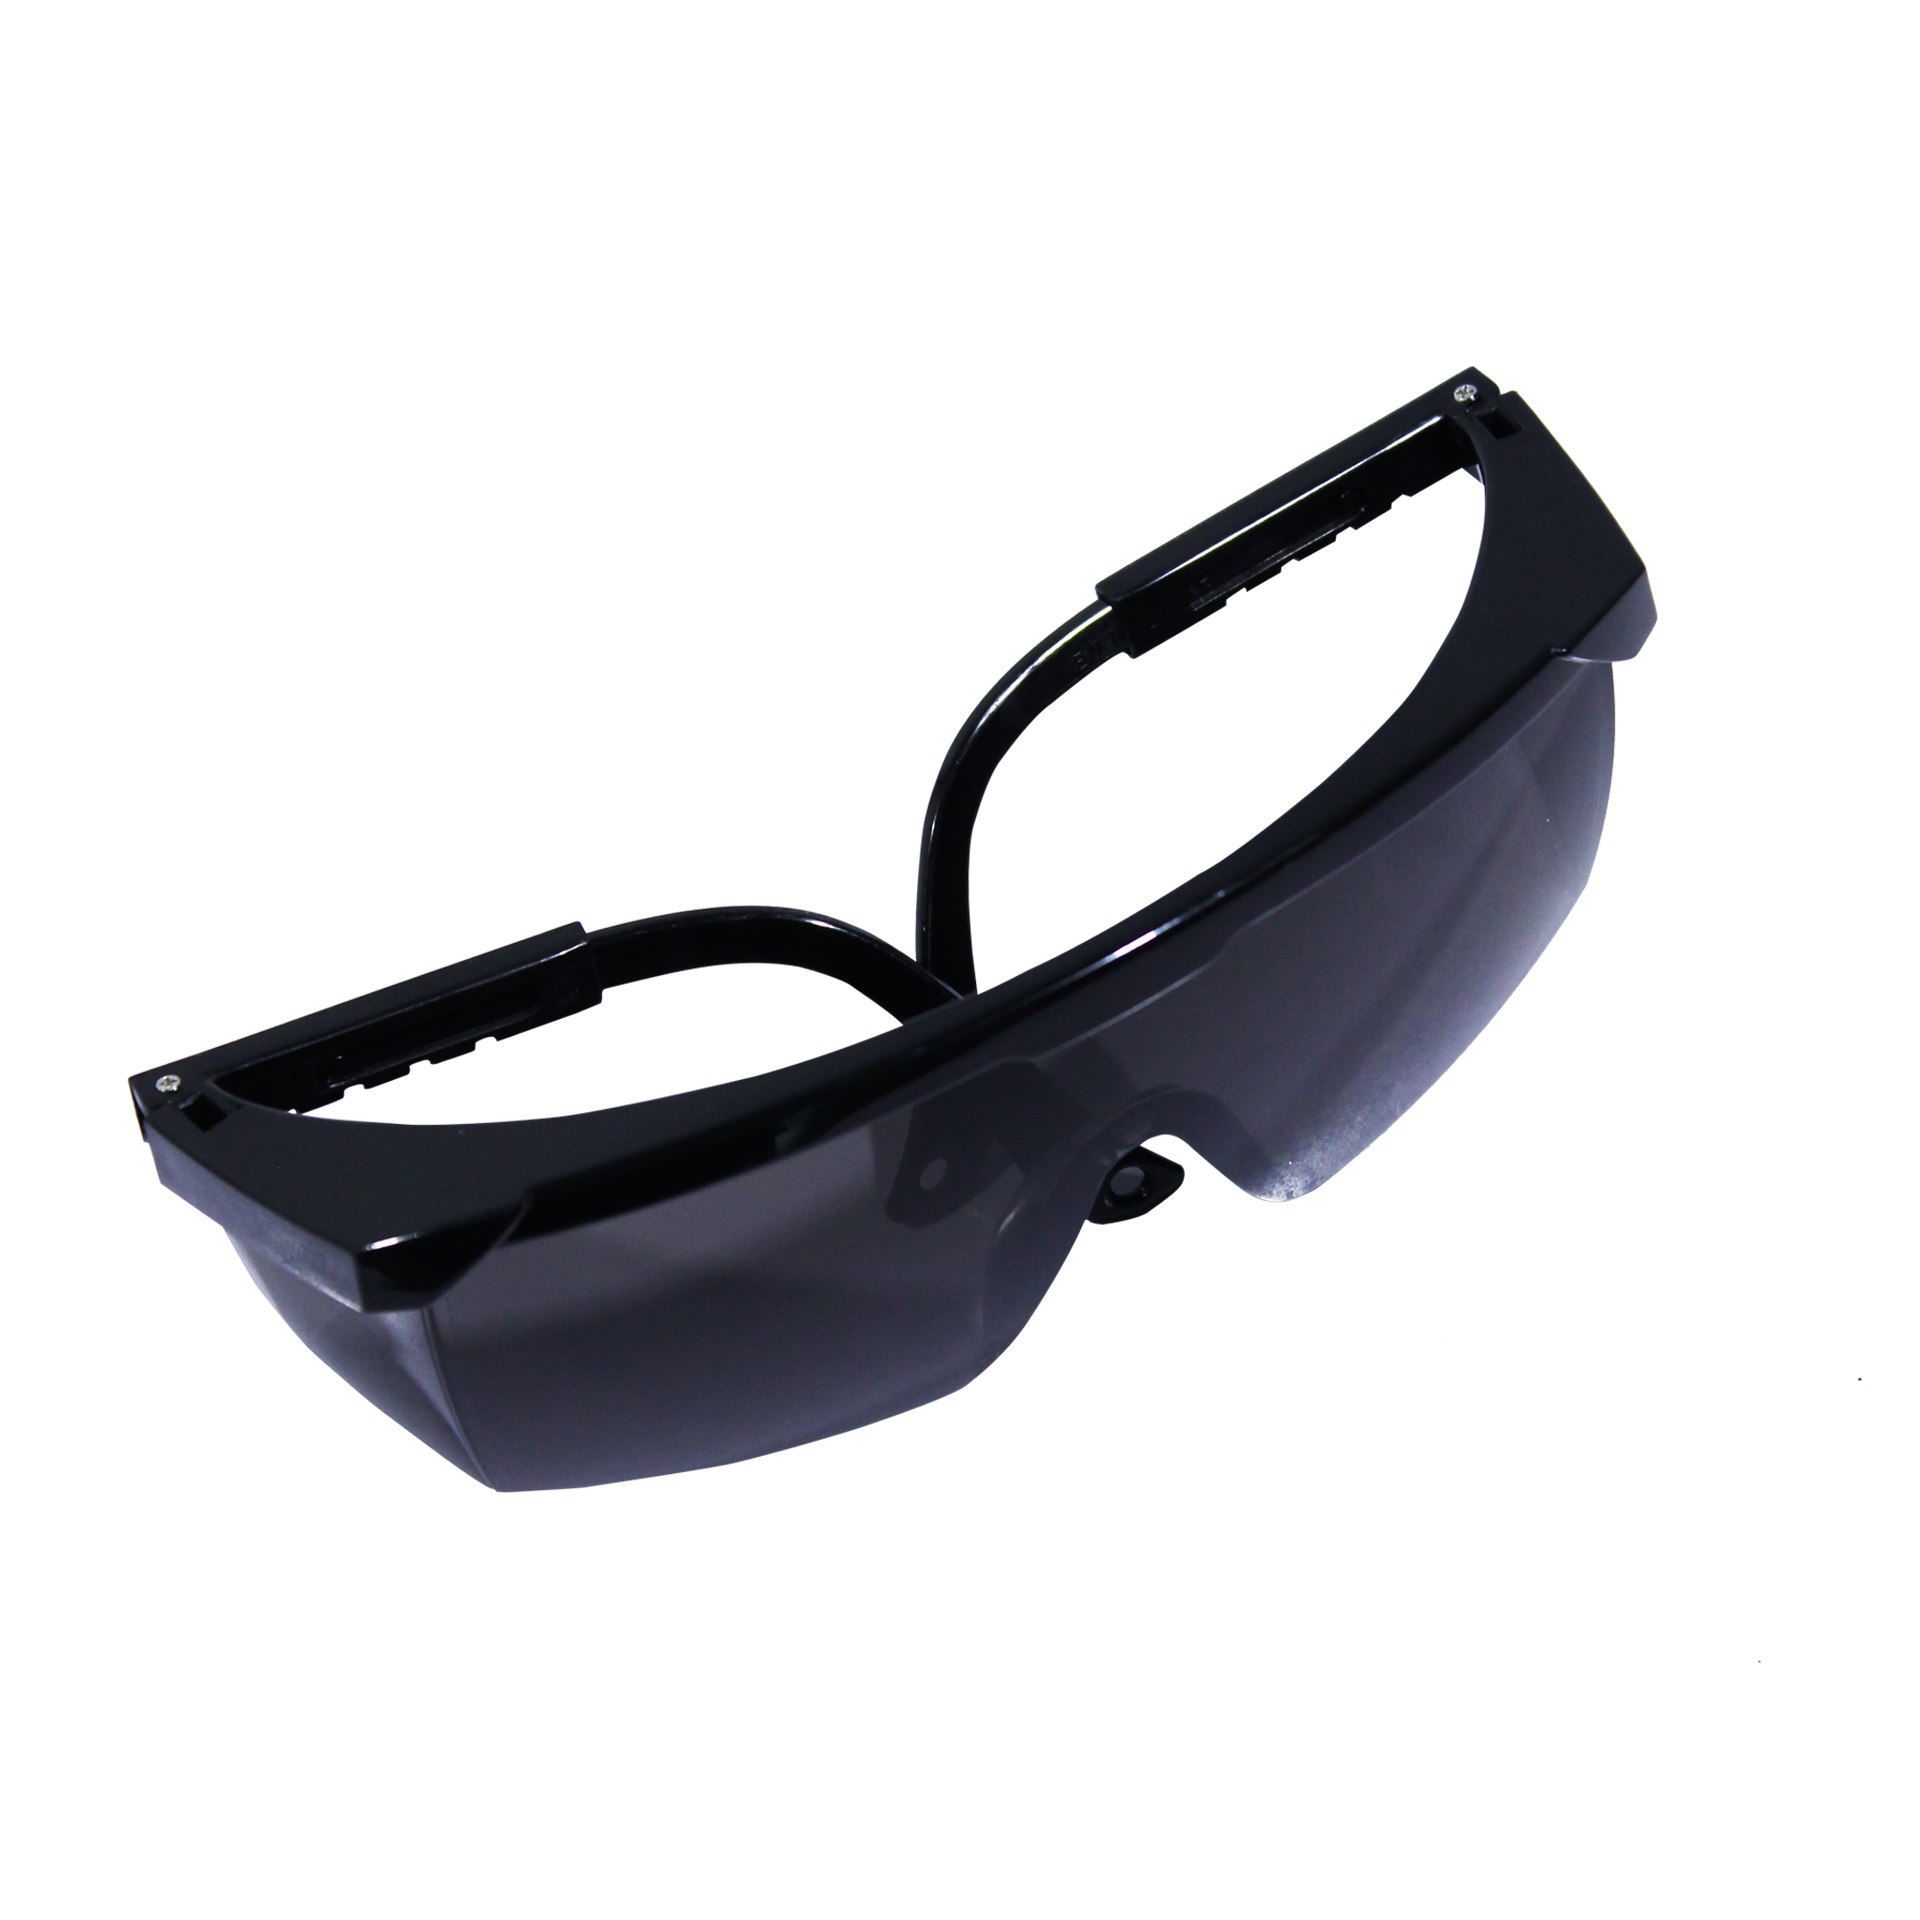 แว่นตานิรภัย แบบเลนส์สีเทา รุ่น SAFETYWARE CLASSIK-AF